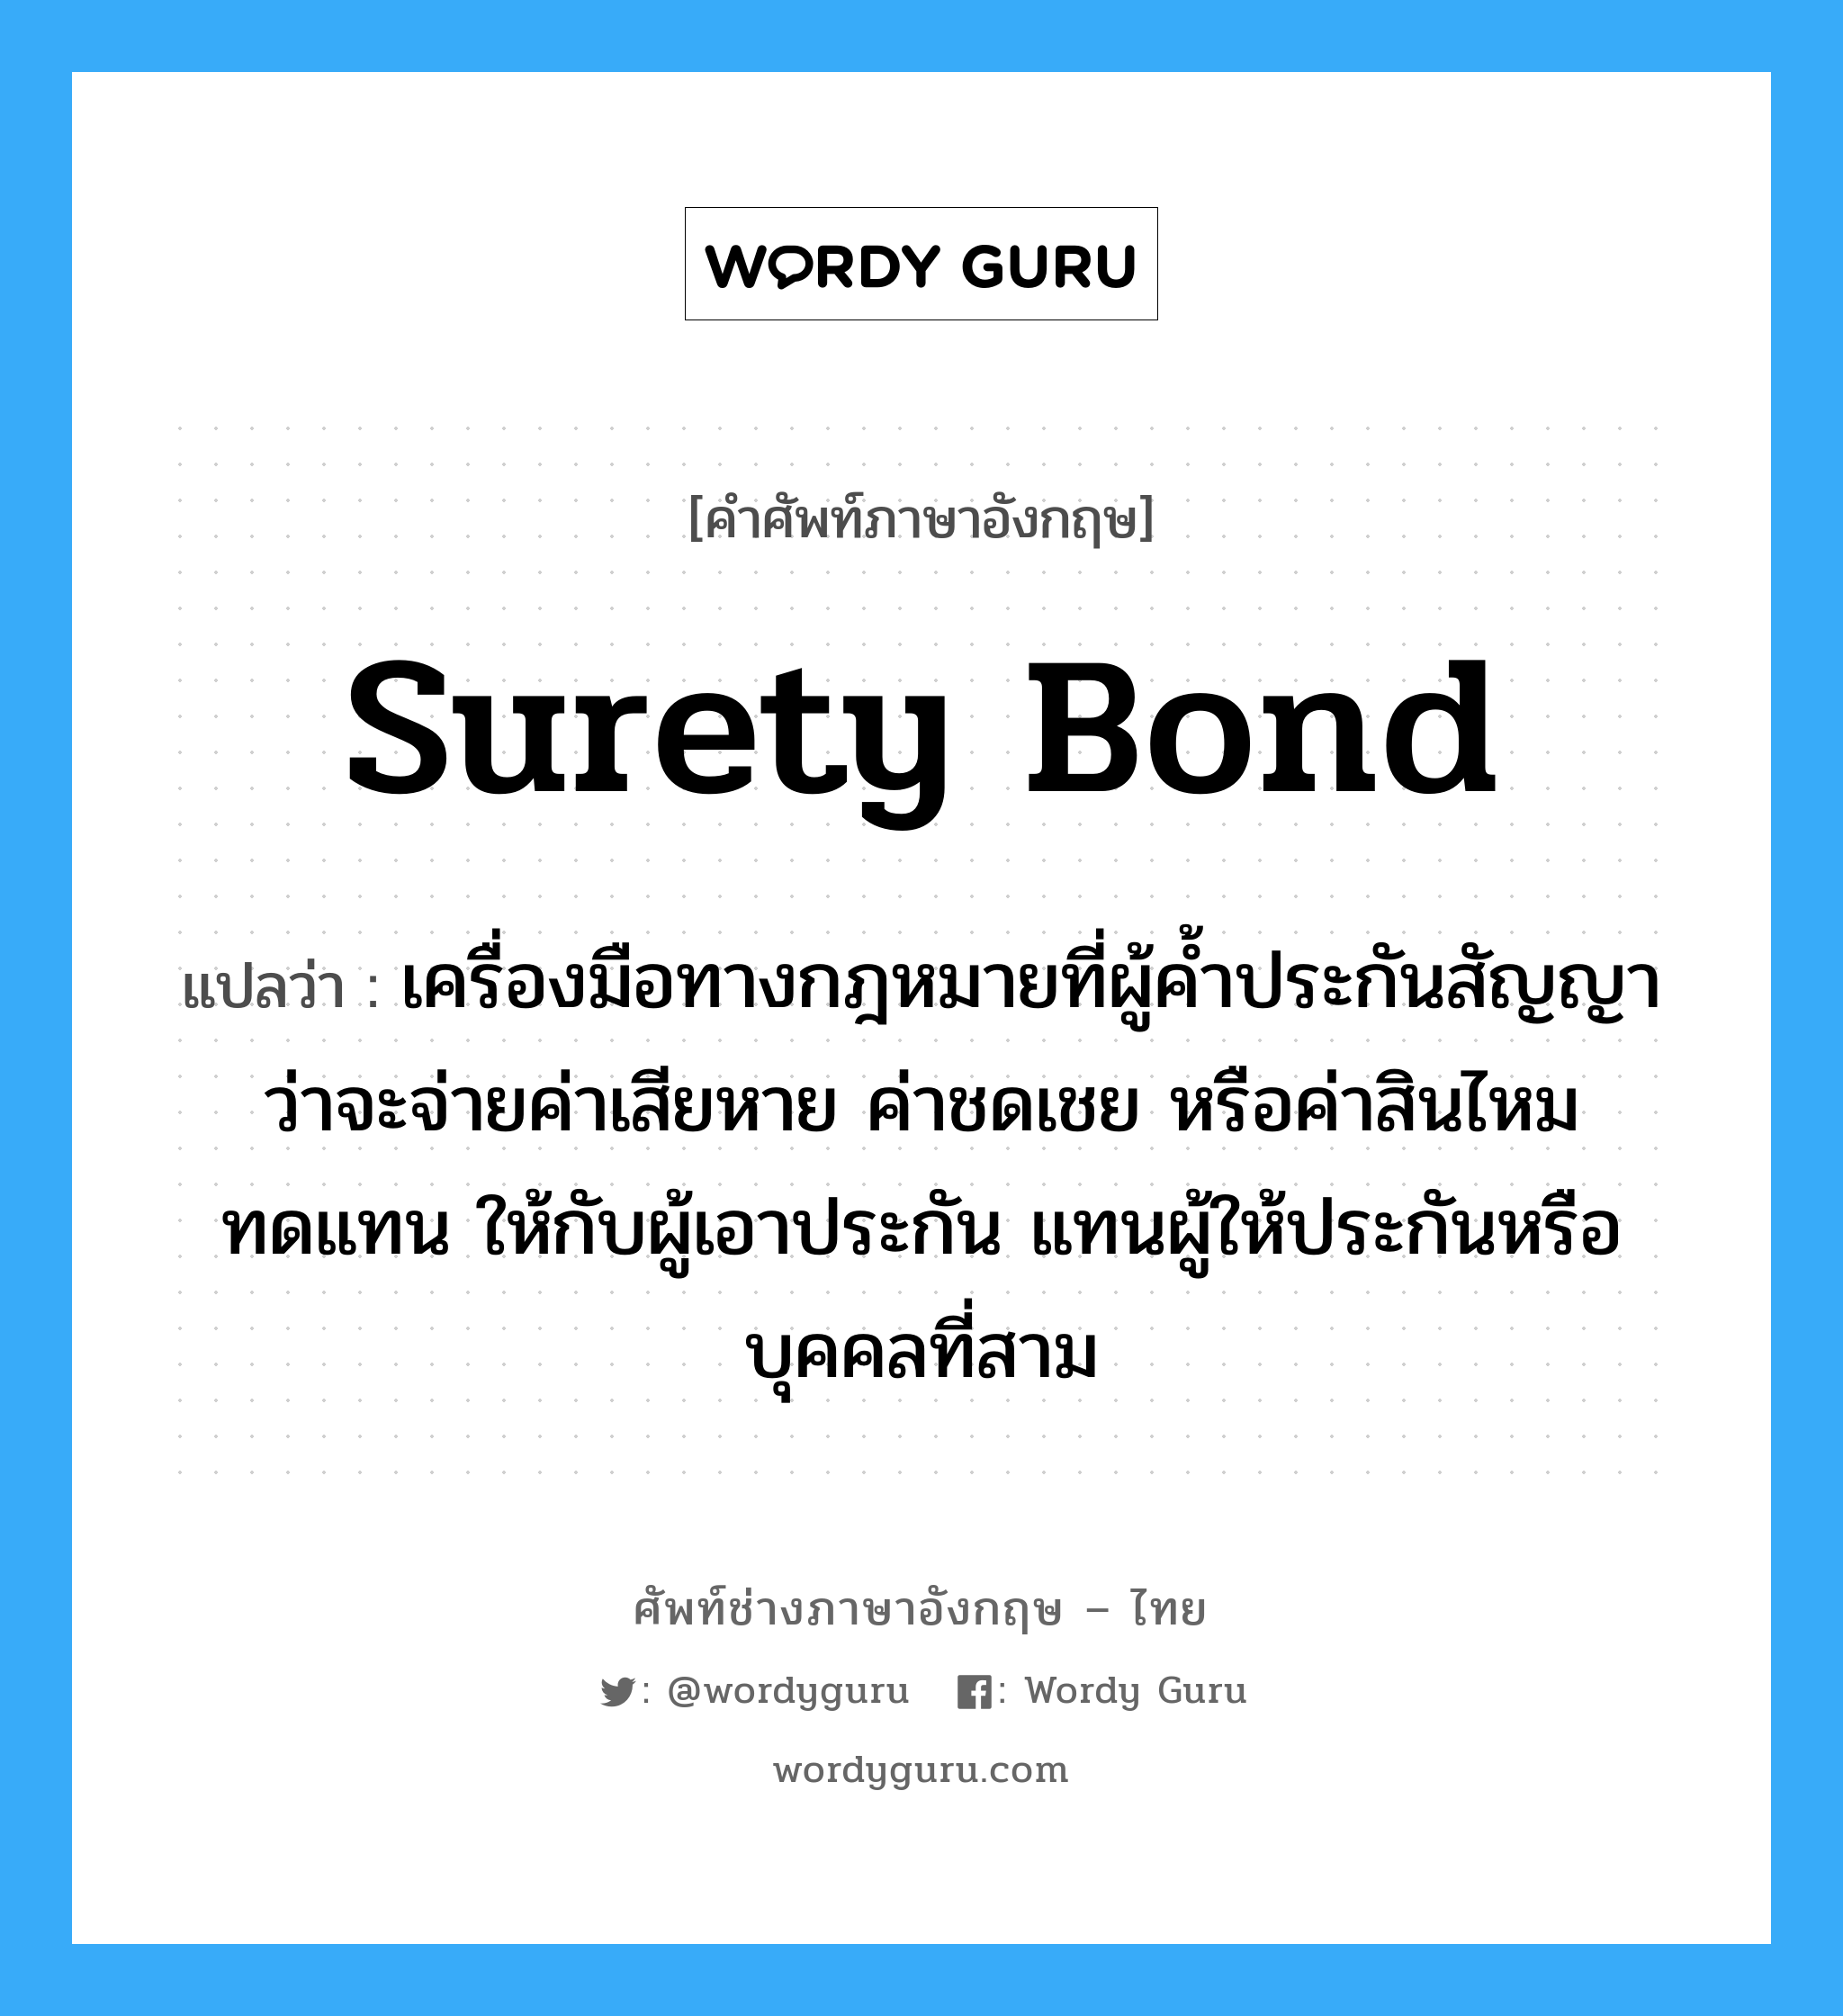 Surety bond แปลว่า?, คำศัพท์ช่างภาษาอังกฤษ - ไทย Surety bond คำศัพท์ภาษาอังกฤษ Surety bond แปลว่า เครื่องมือทางกฎหมายที่ผู้ค้ำประกันสัญญาว่าจะจ่ายค่าเสียหาย ค่าชดเชย หรือค่าสินไหมทดแทน ให้กับผู้เอาประกัน แทนผู้ให้ประกันหรือบุคคลที่สาม